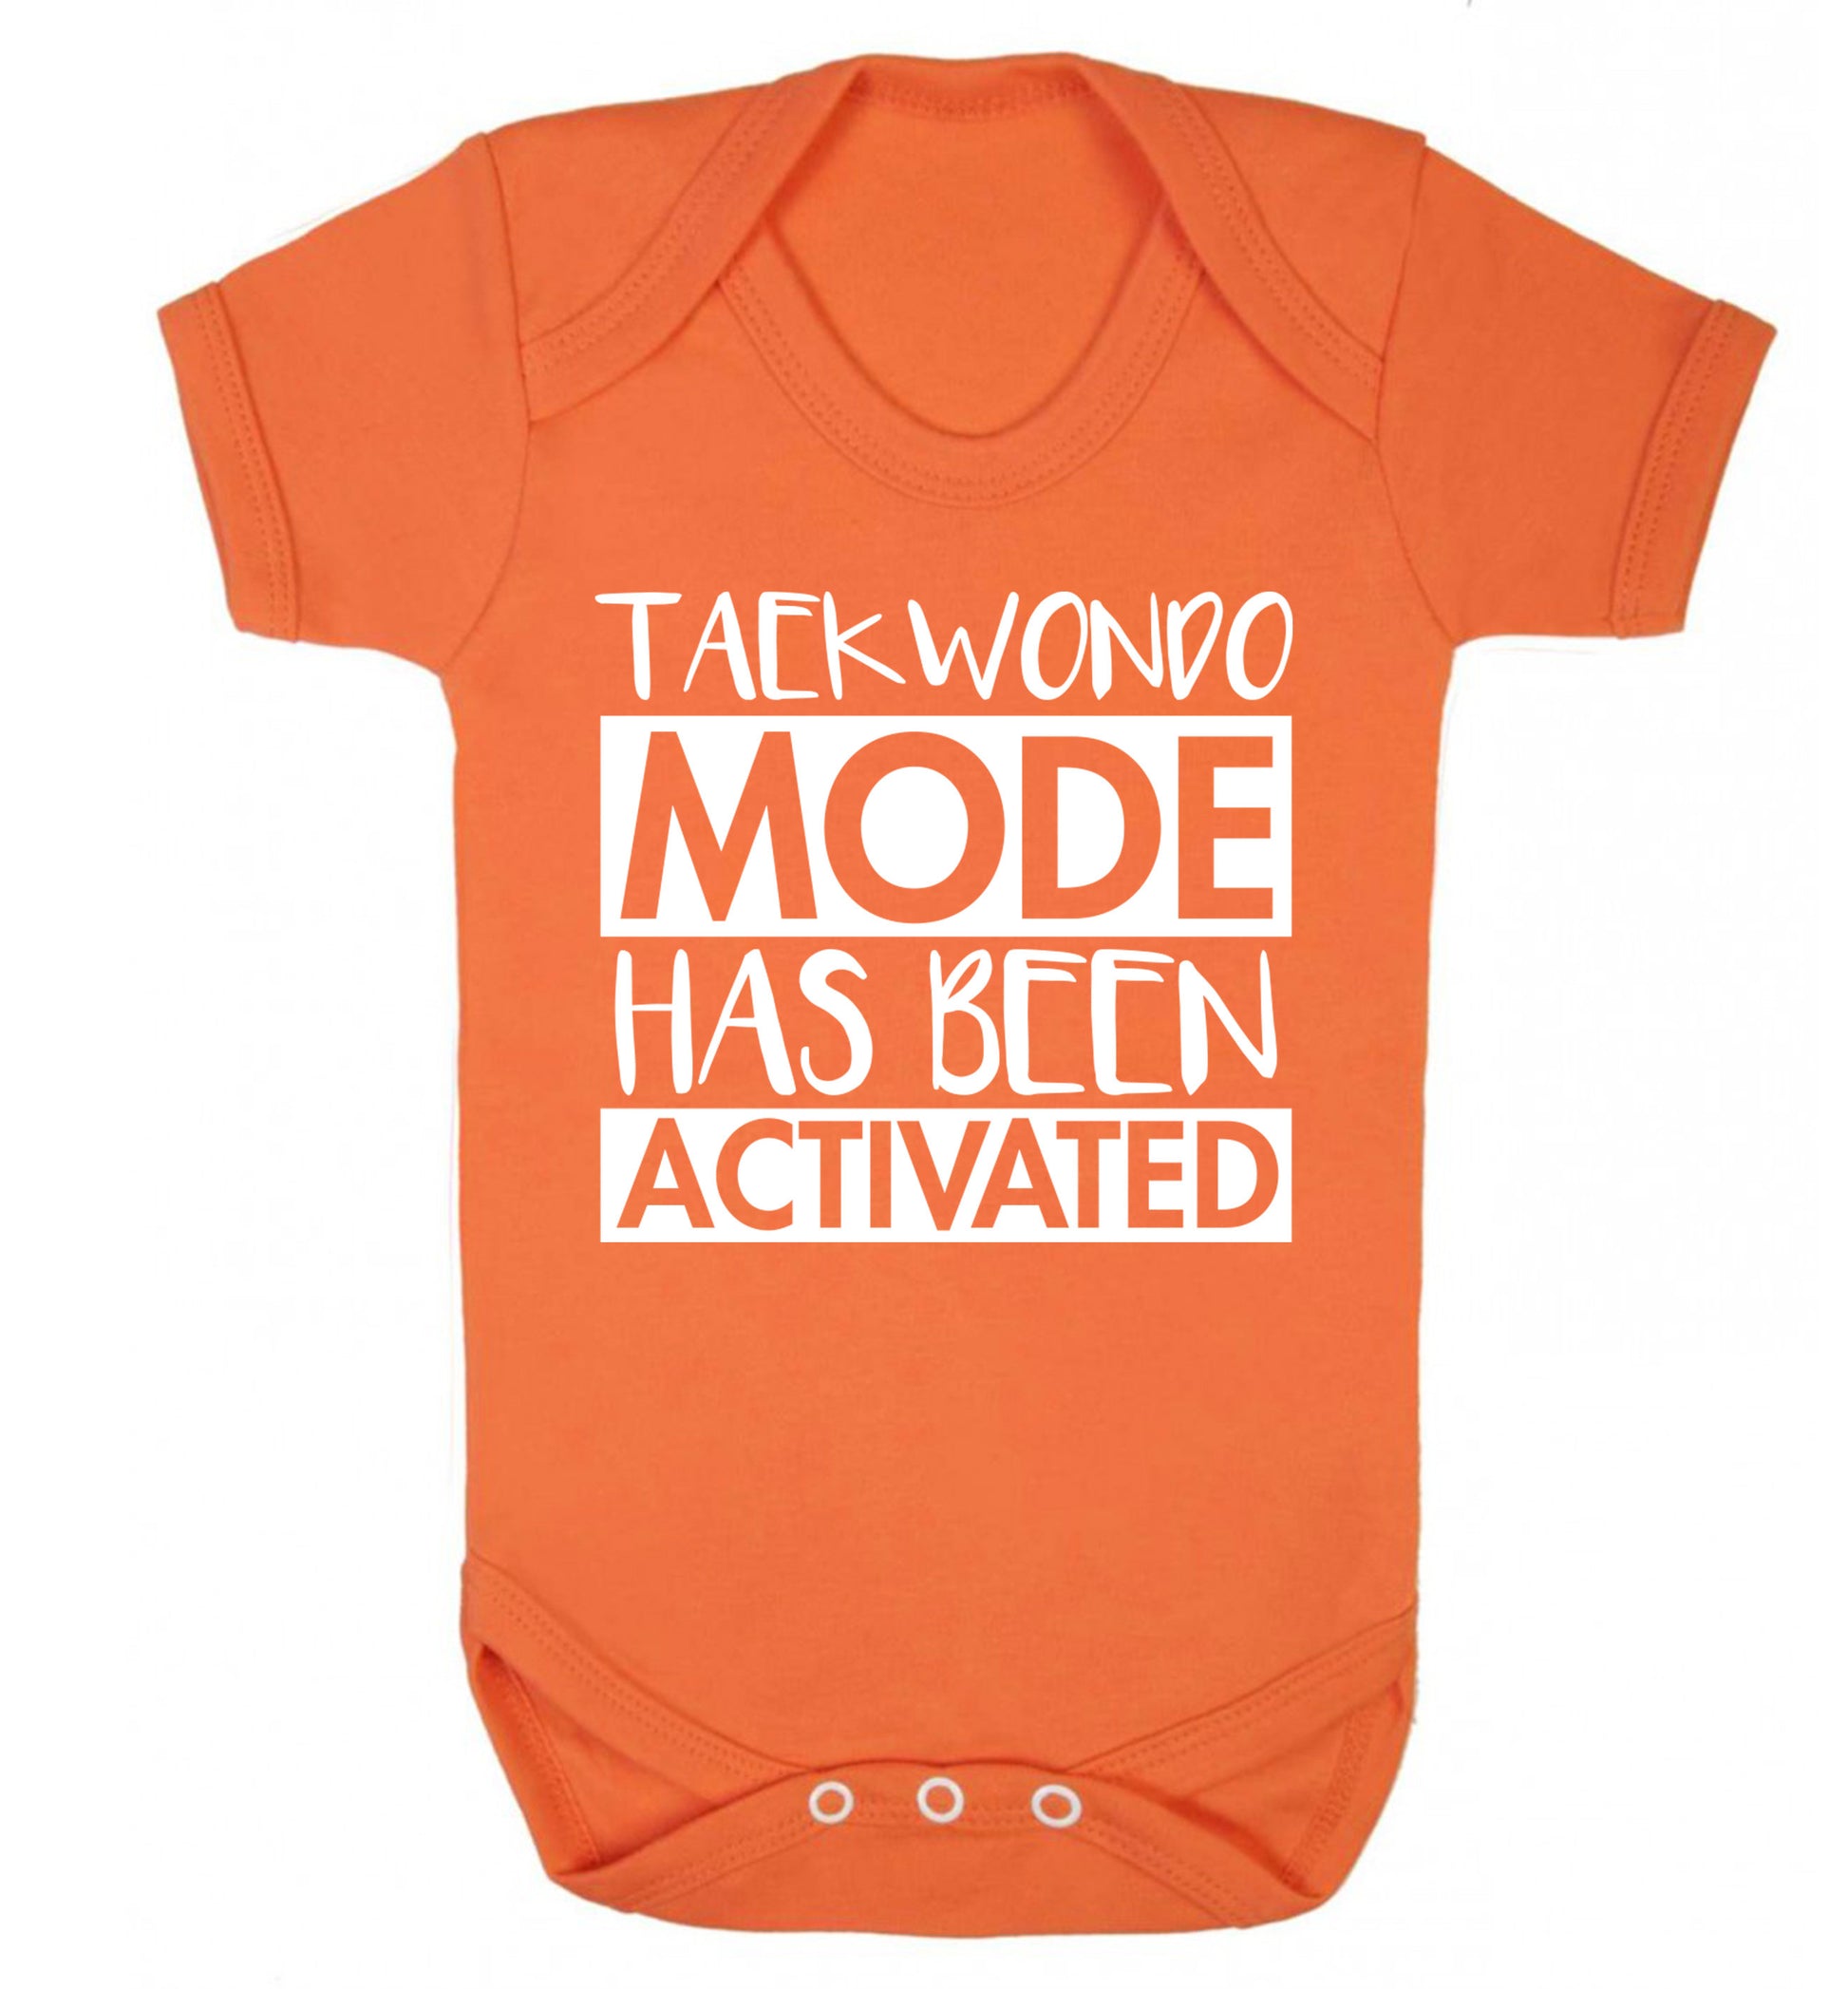 Taekwondo mode activated Baby Vest orange 18-24 months